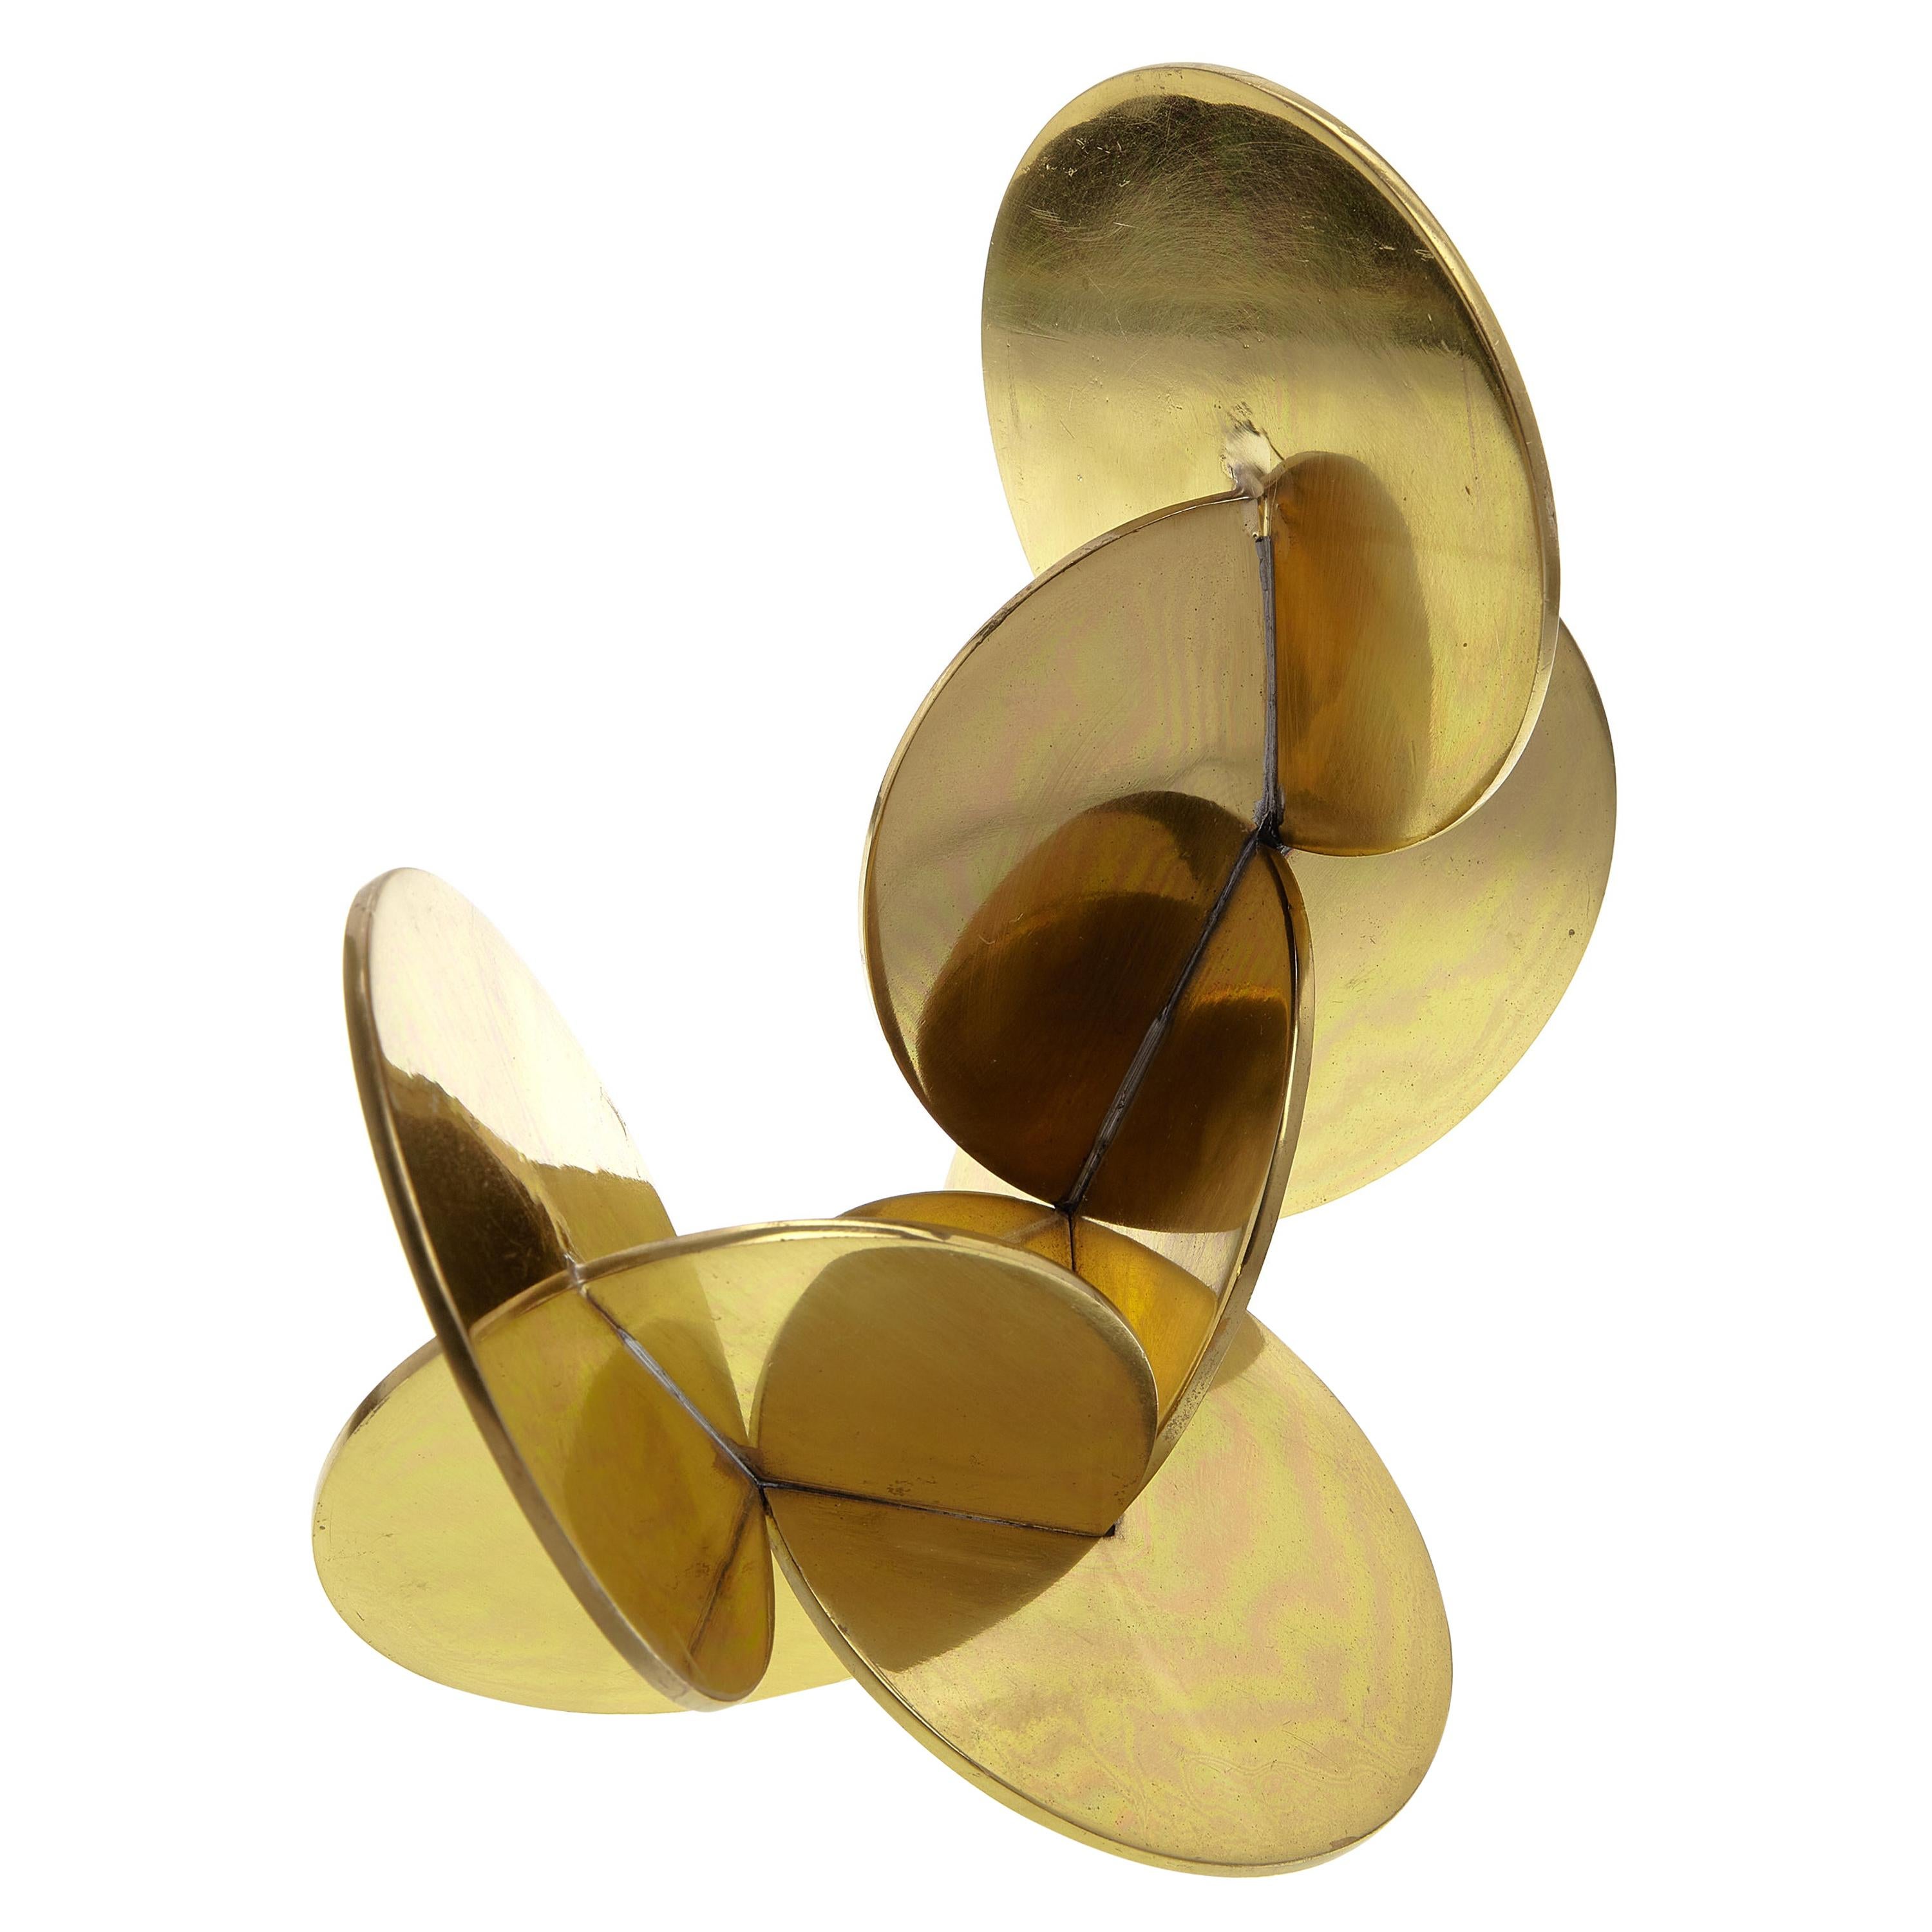 Modernist Brass Sculpture with Interlocking Discs